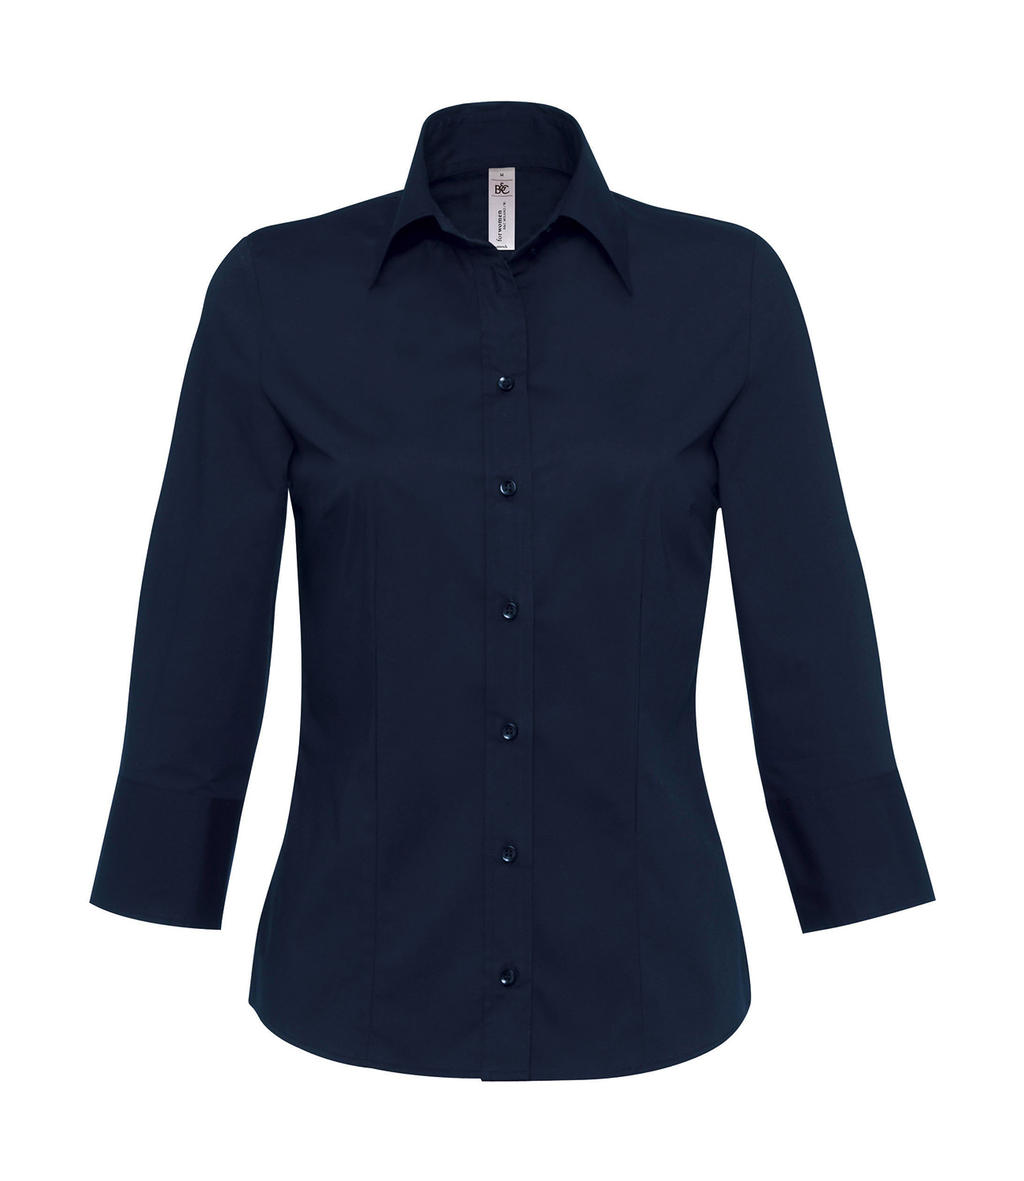 Blúzka Milano/women Popelin Shirt 3/4 sleeves - navy